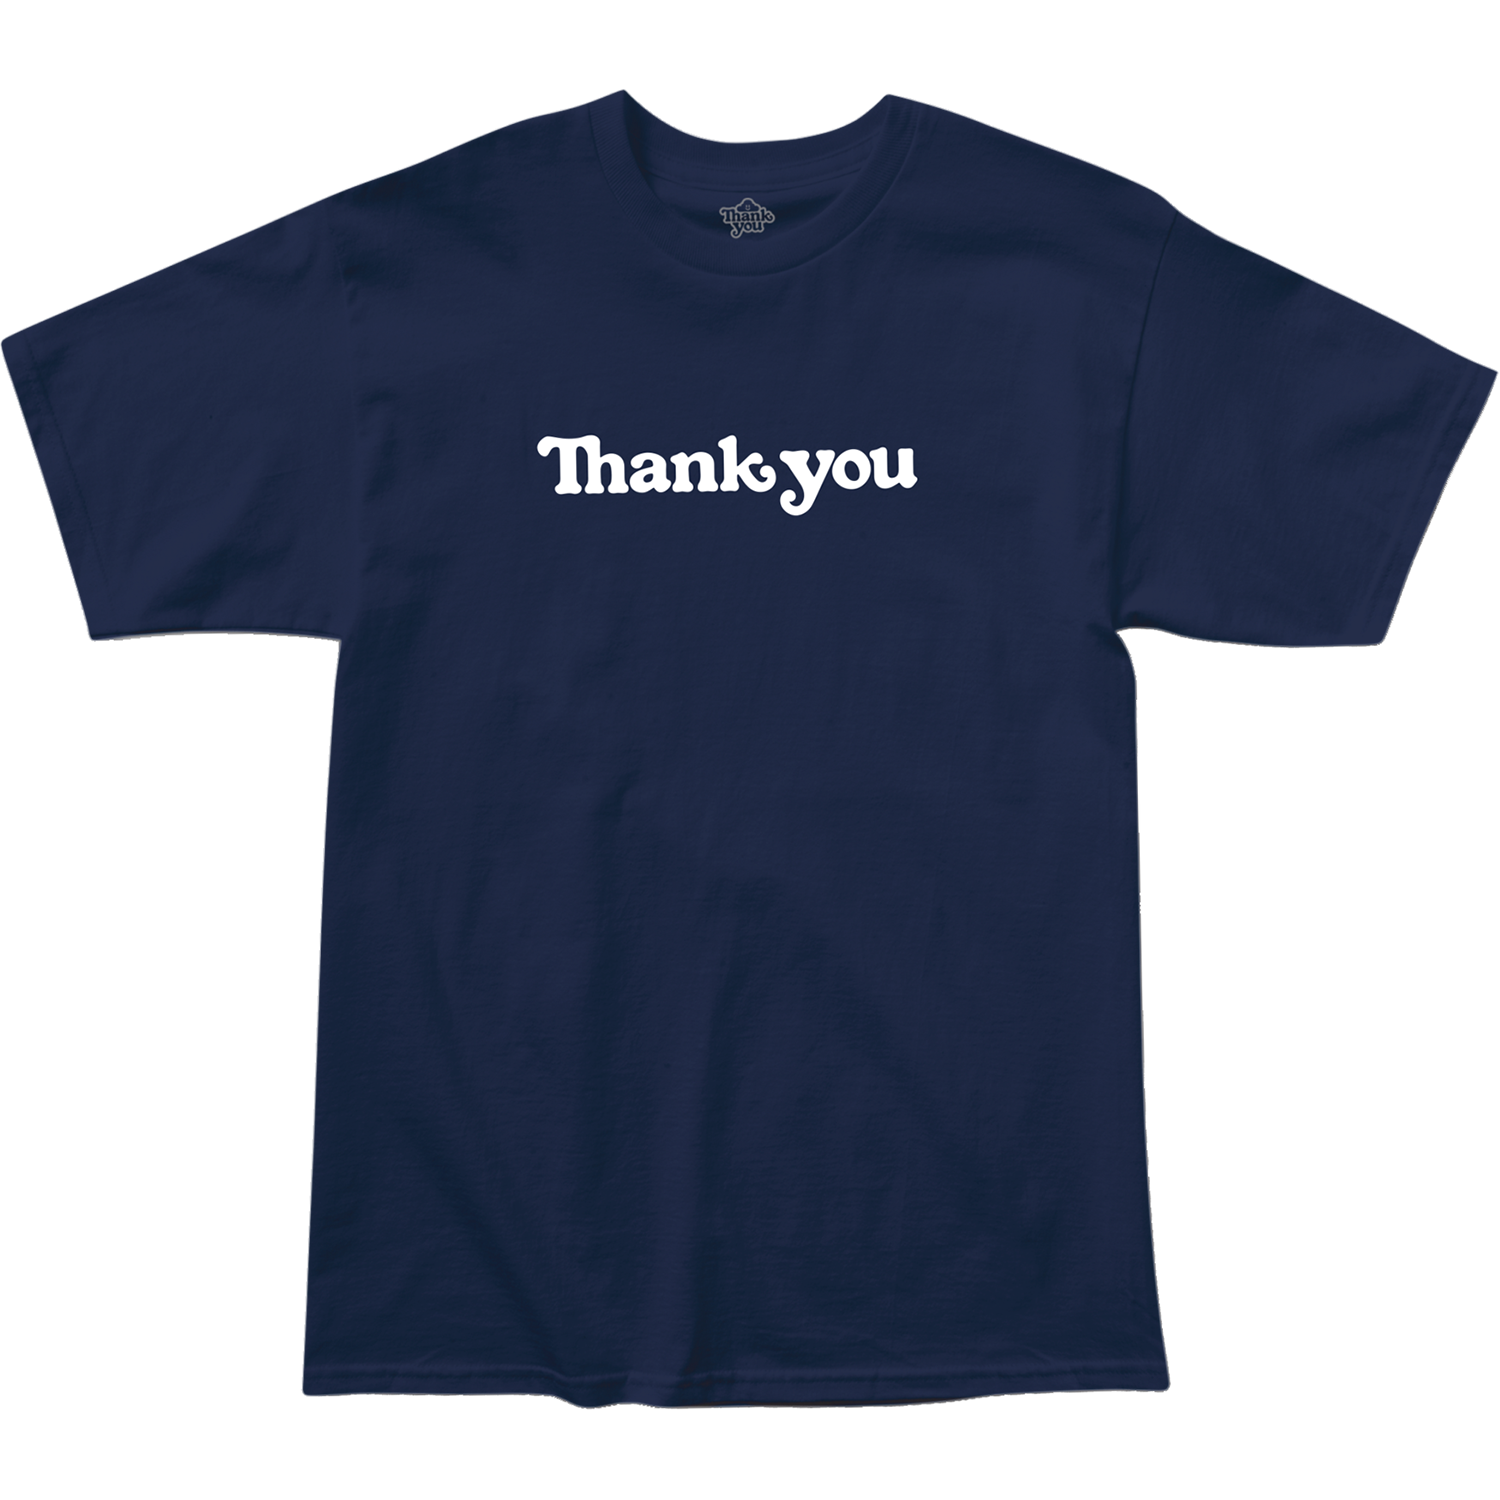 Thank You Center T-Shirt - Navy